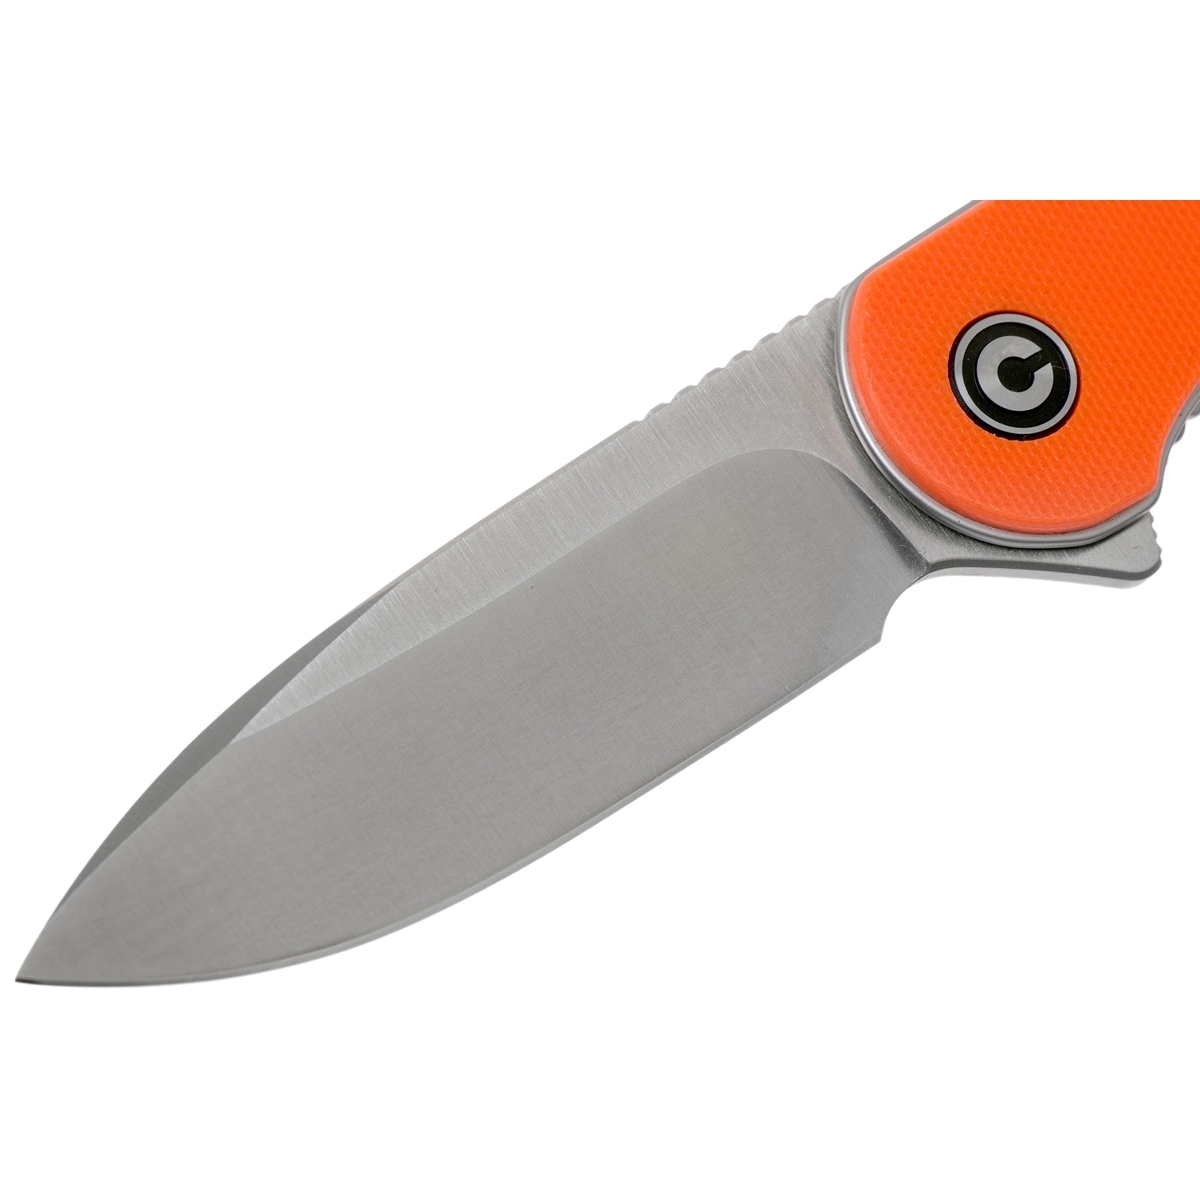 Ножи civivi купить. Нож Civivi Circulus. Нож Элементум. Шейный нож Civivi d-Art, сталь d2. Нож складной Civivi c907y Black Stonewashed d2 Blade, Orange g10 Handle.